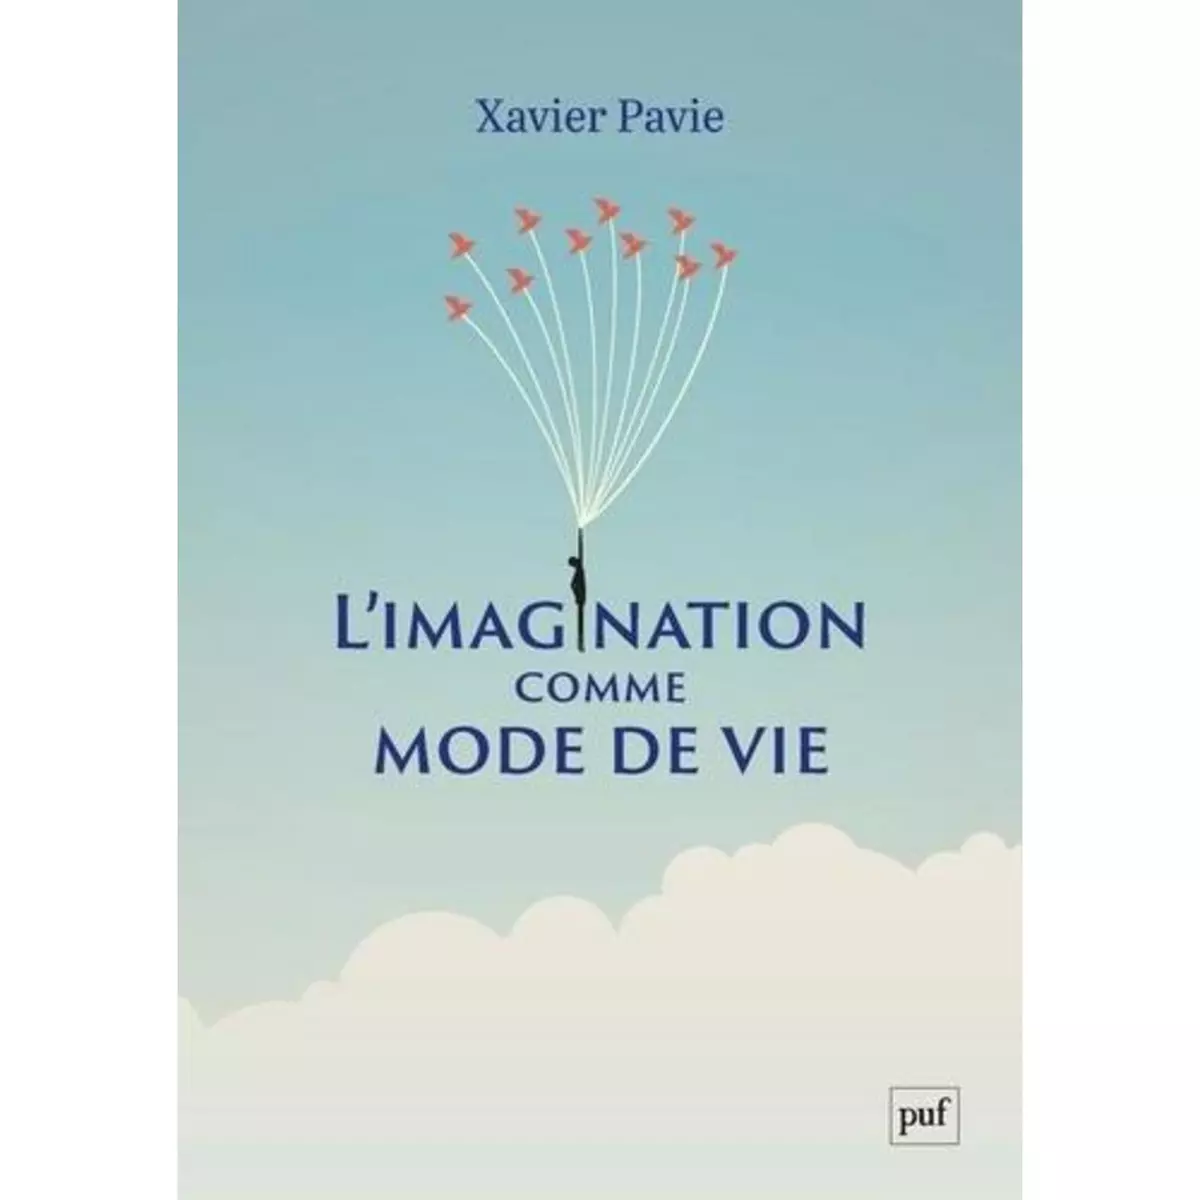  L'IMAGINATION COMME MODE DE VIE, Pavie Xavier